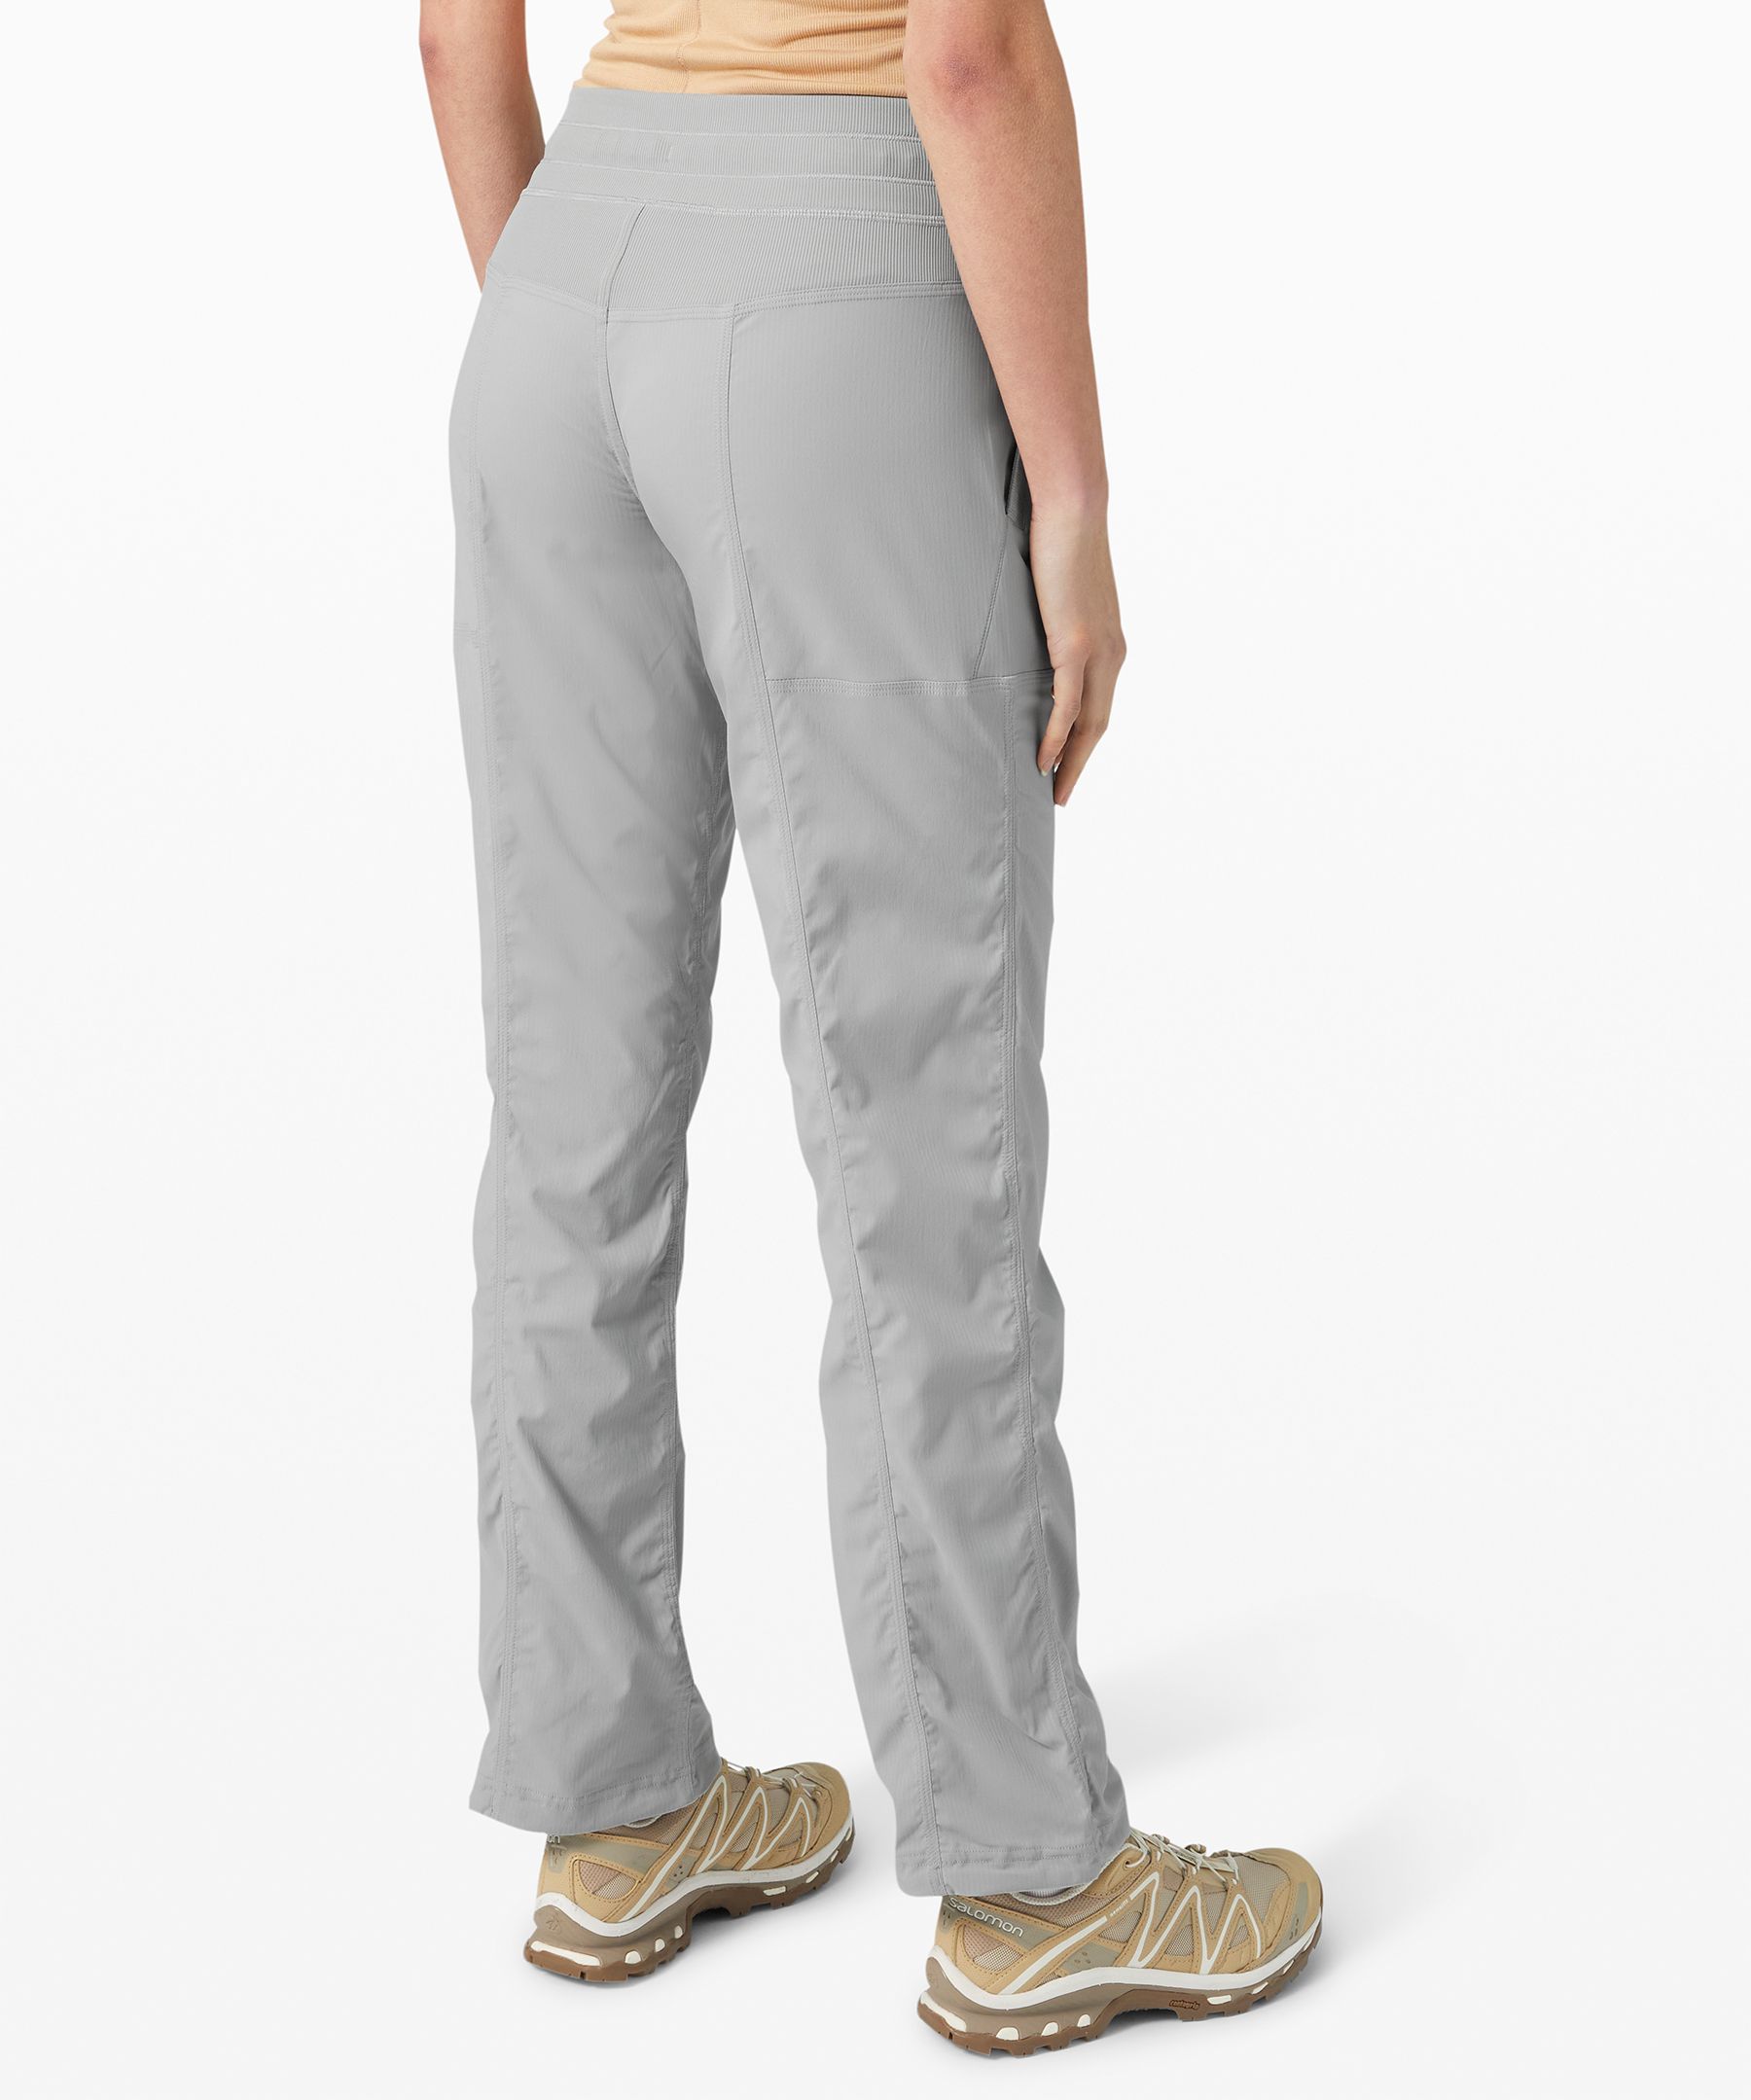 lululemon grey studio pants